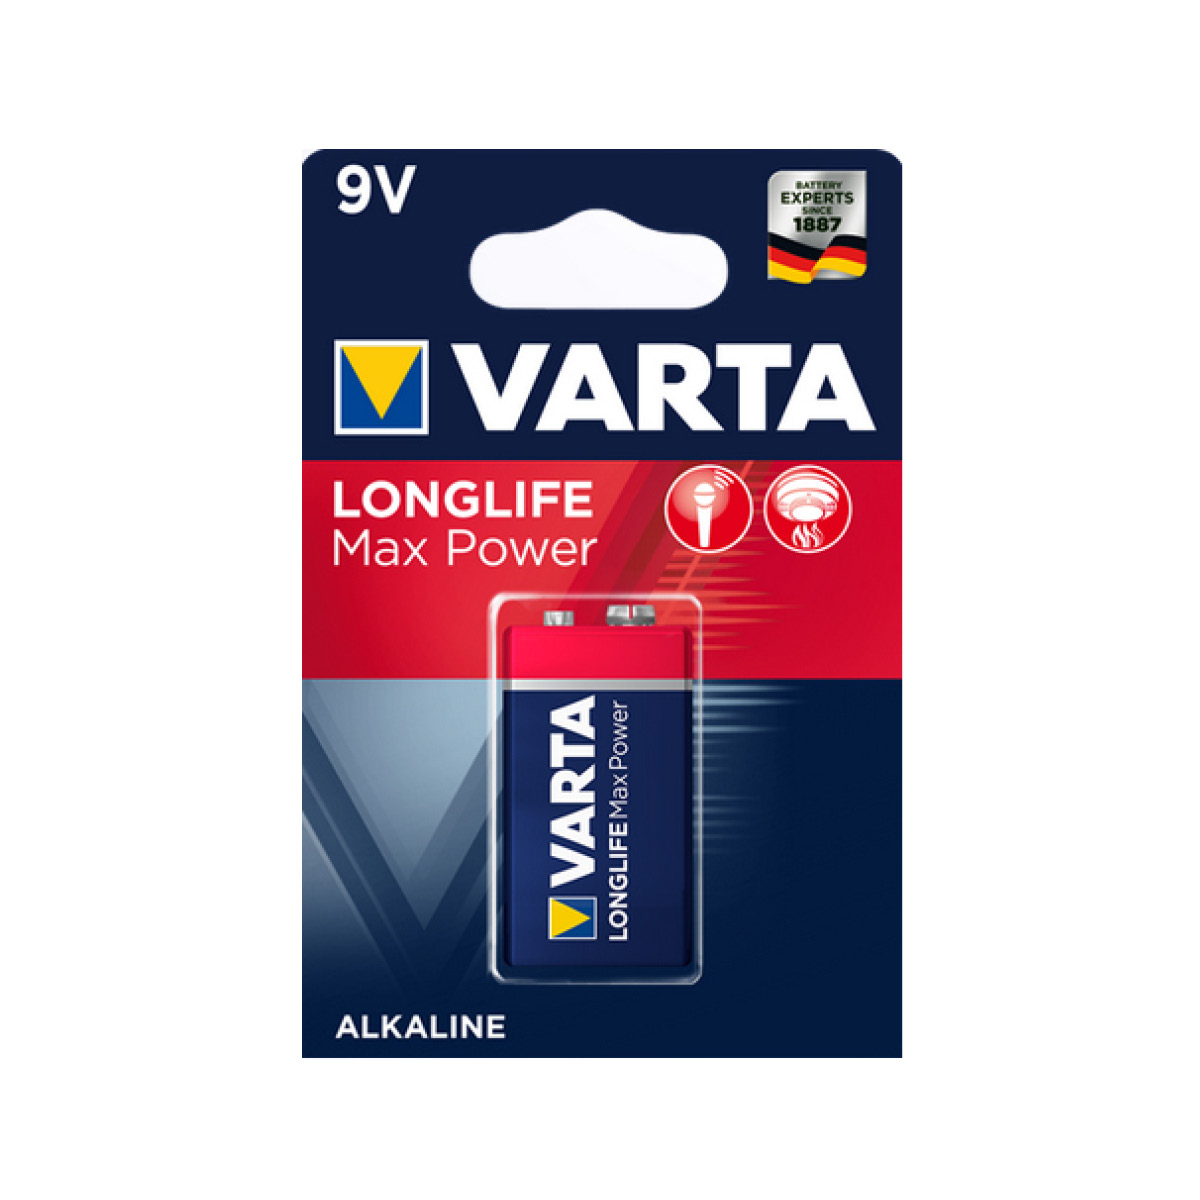 Varta Longlife Max Power 9V Block 6LR61 Batterie